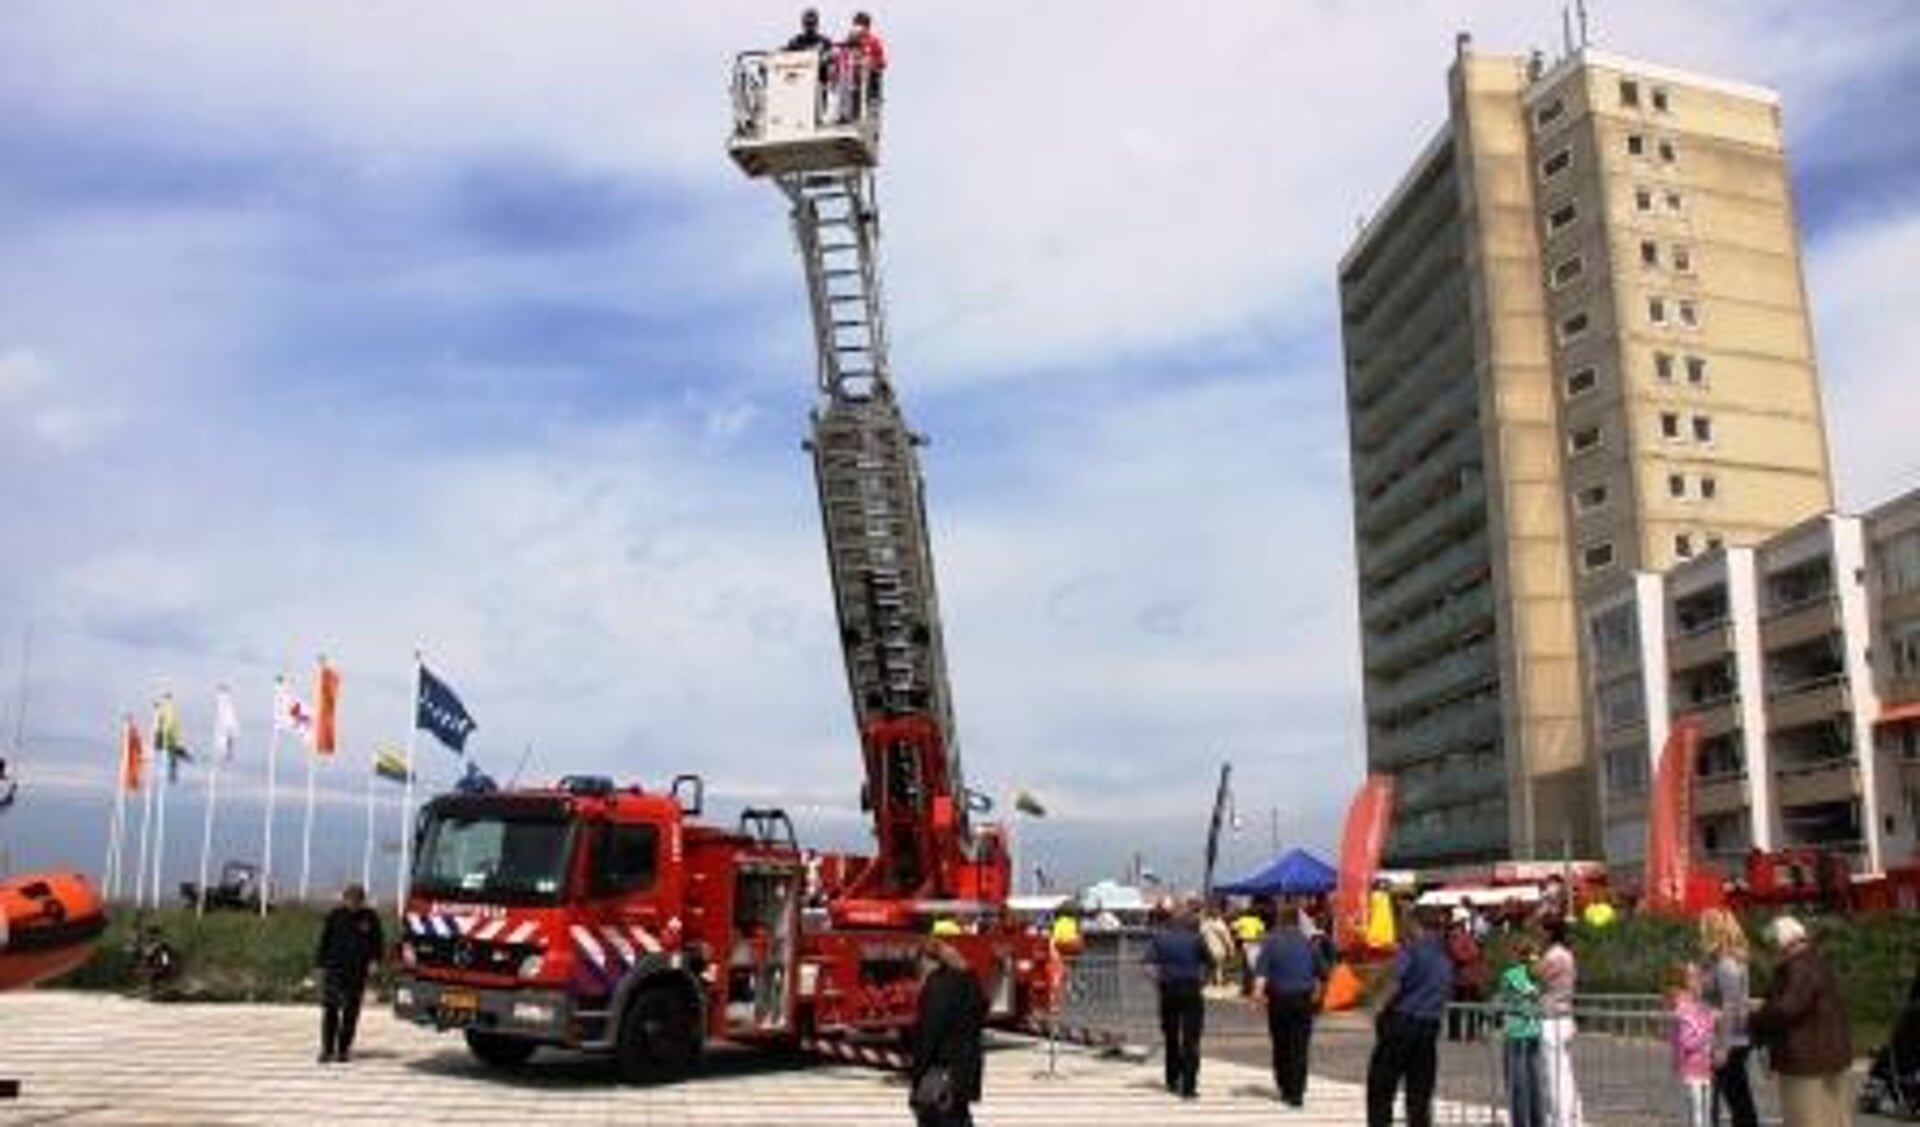 Ladderwagen brandweer wordt wegbezuinigd